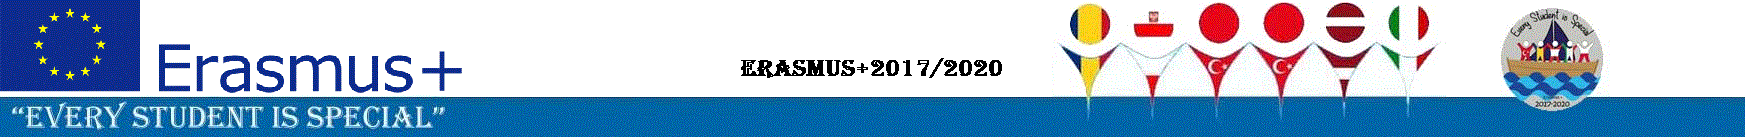 ERASMUS+2017/2020